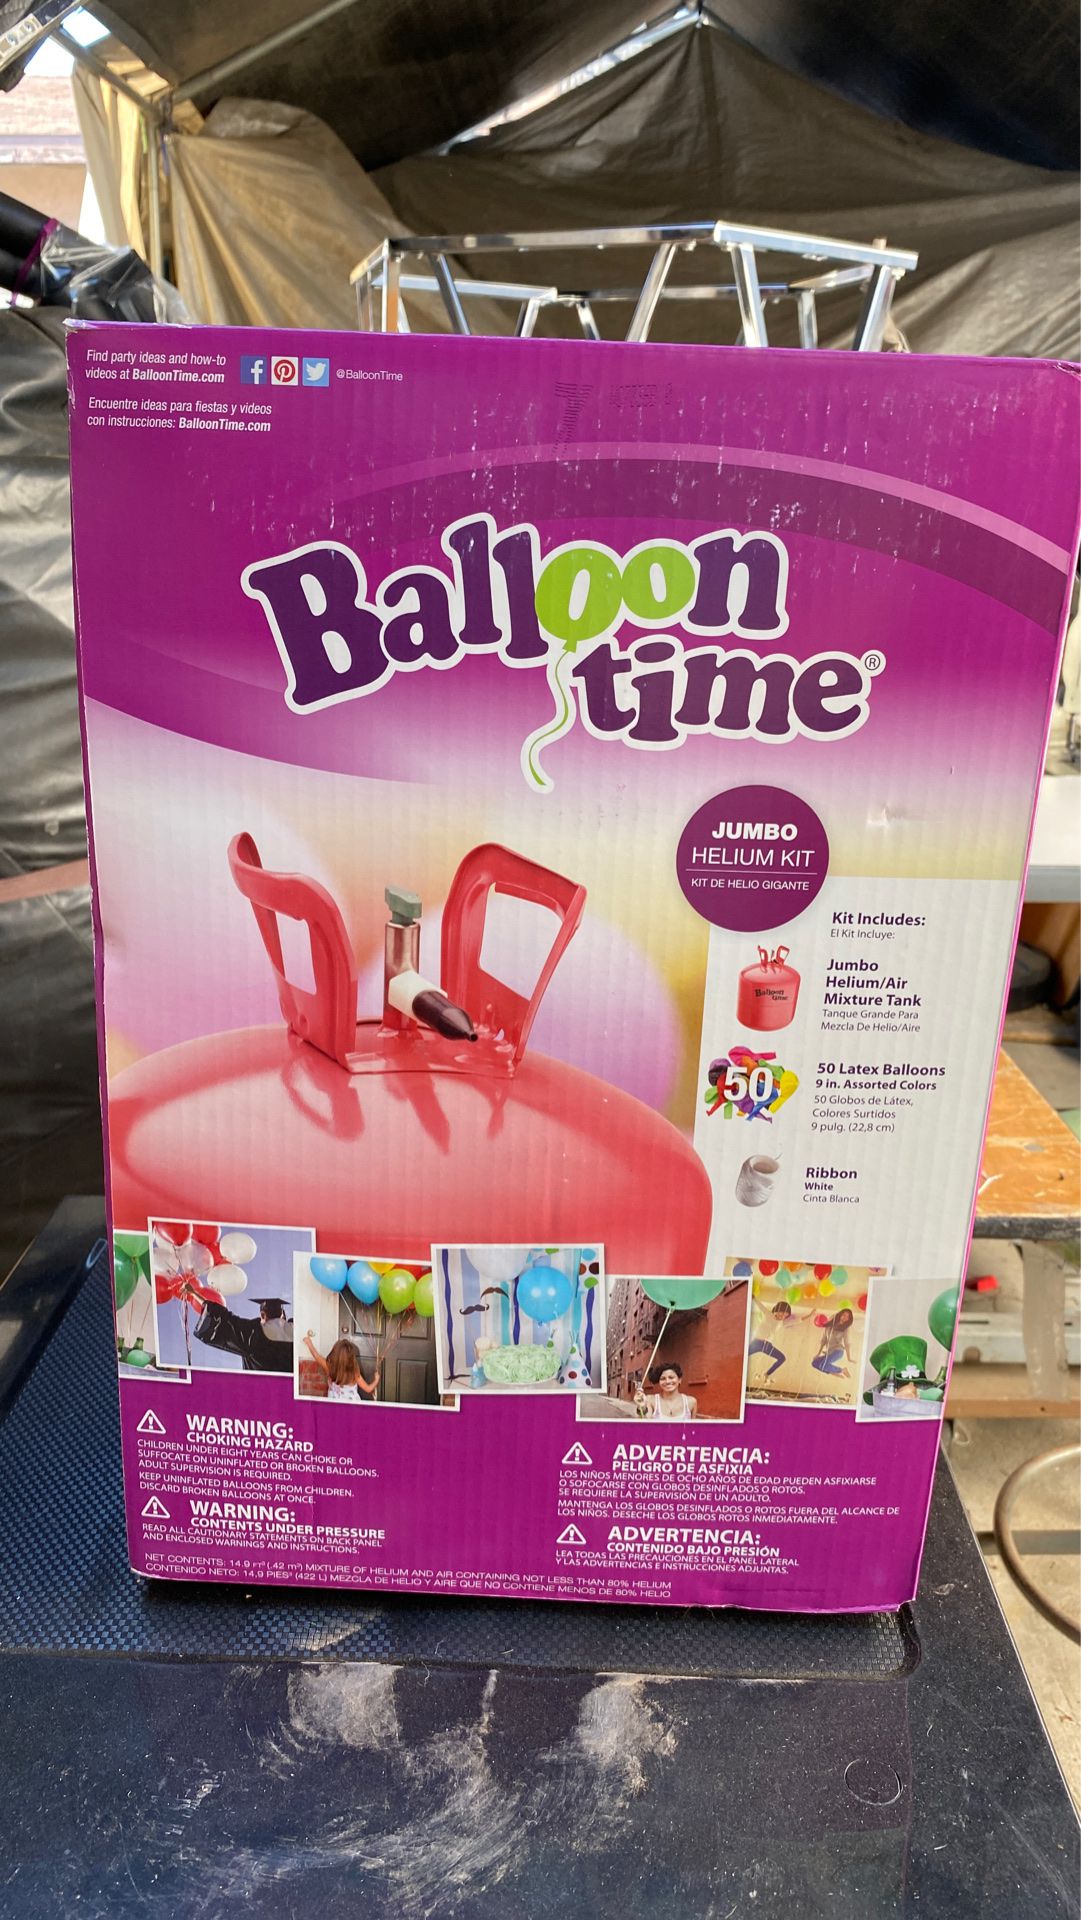 Balloon time